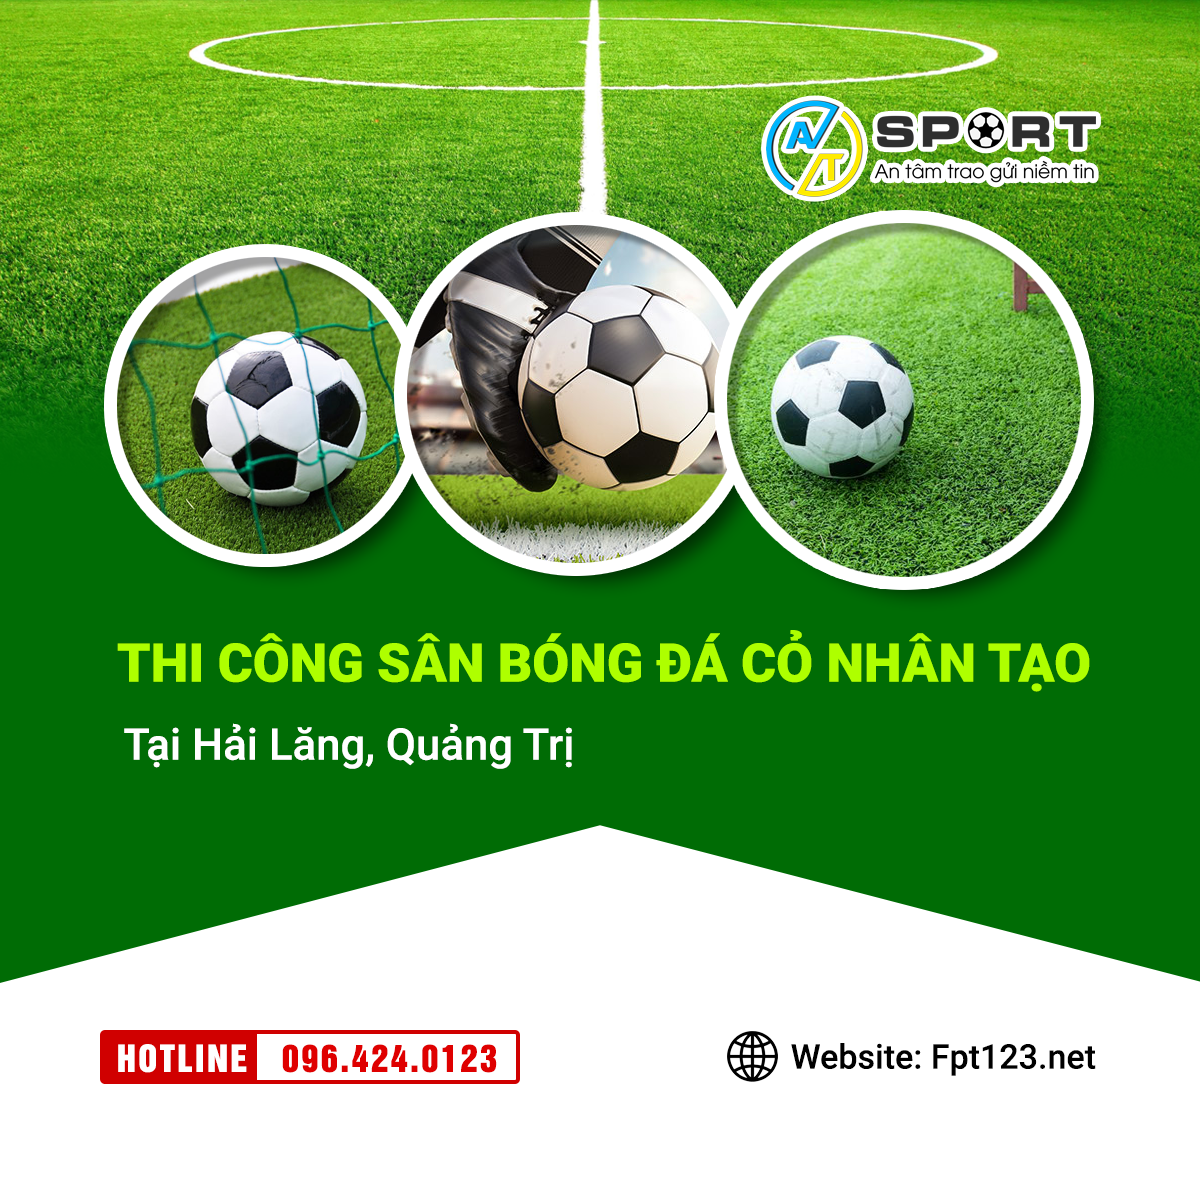 Thi công sân bóng đá cỏ nhân tạo tại Hải Lăng, Quảng Trị